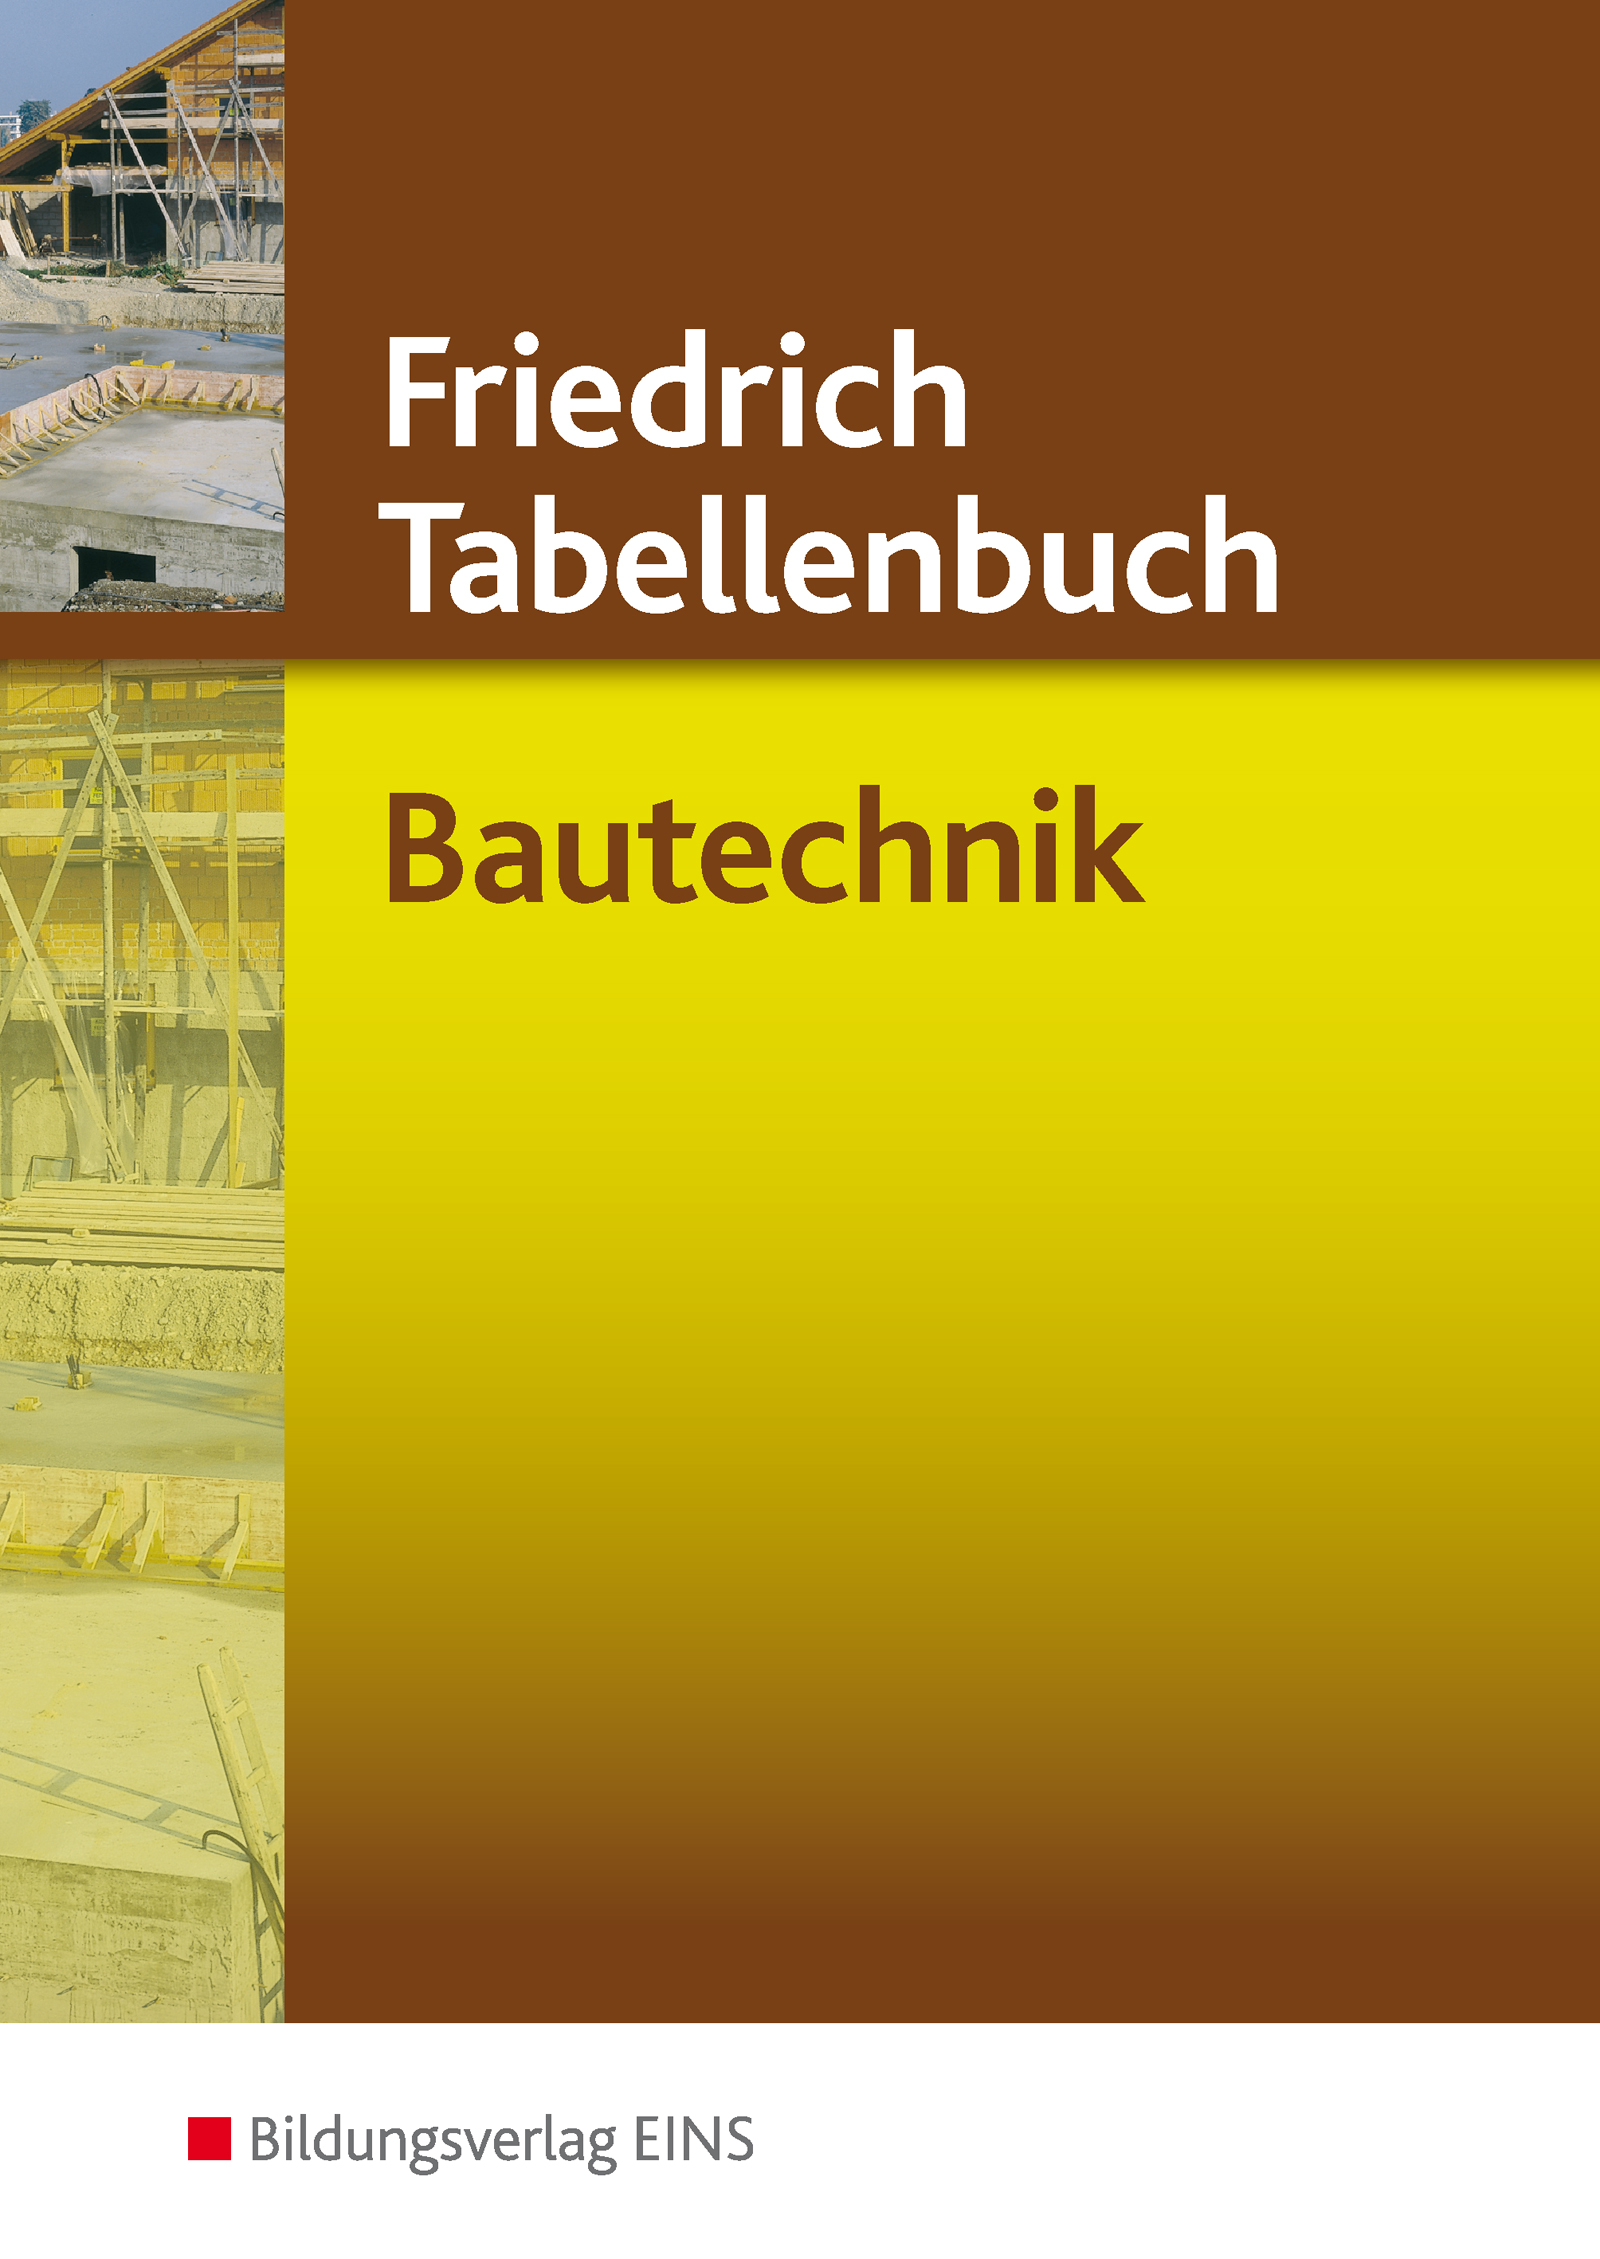 Friedrich Tabellenbuch Bautechnik / Friedrich Tabellenbuch